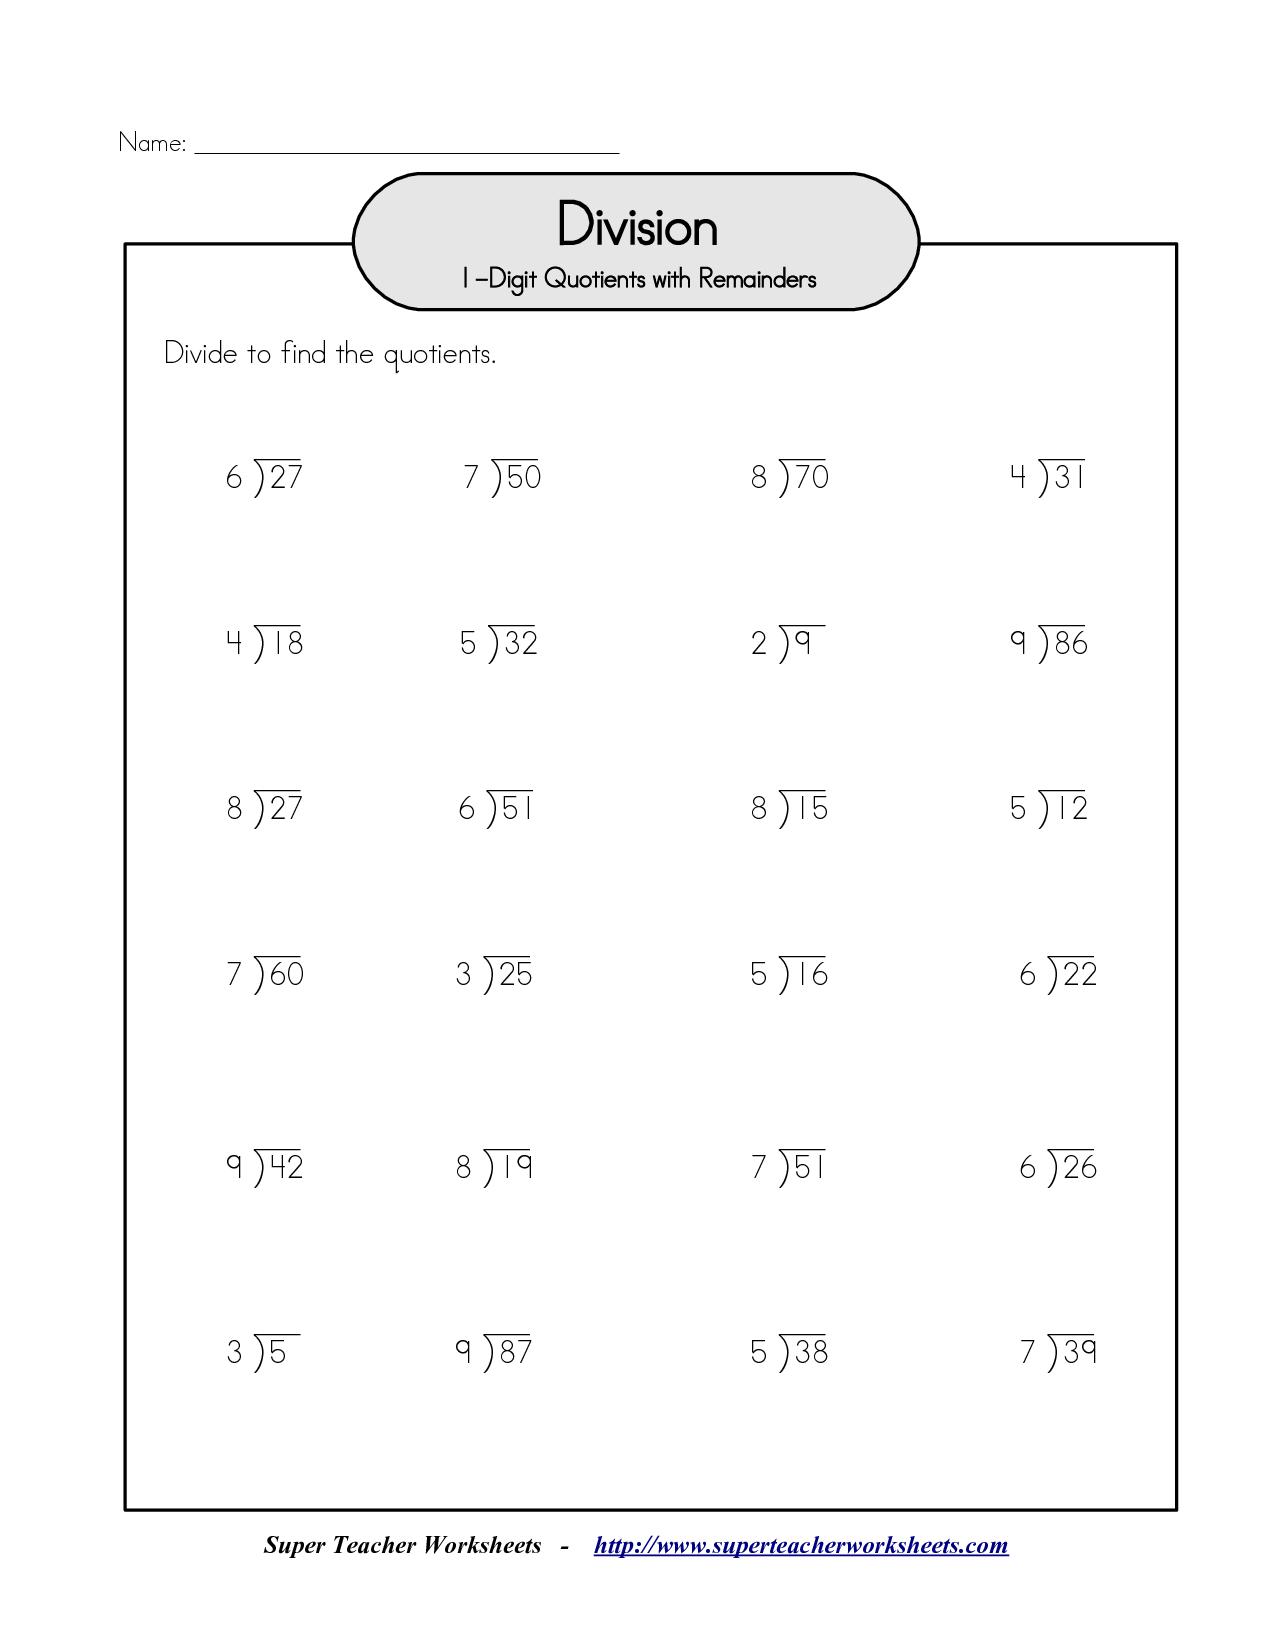 15-best-images-of-division-worksheets-2-2-digit-divisor-division-2